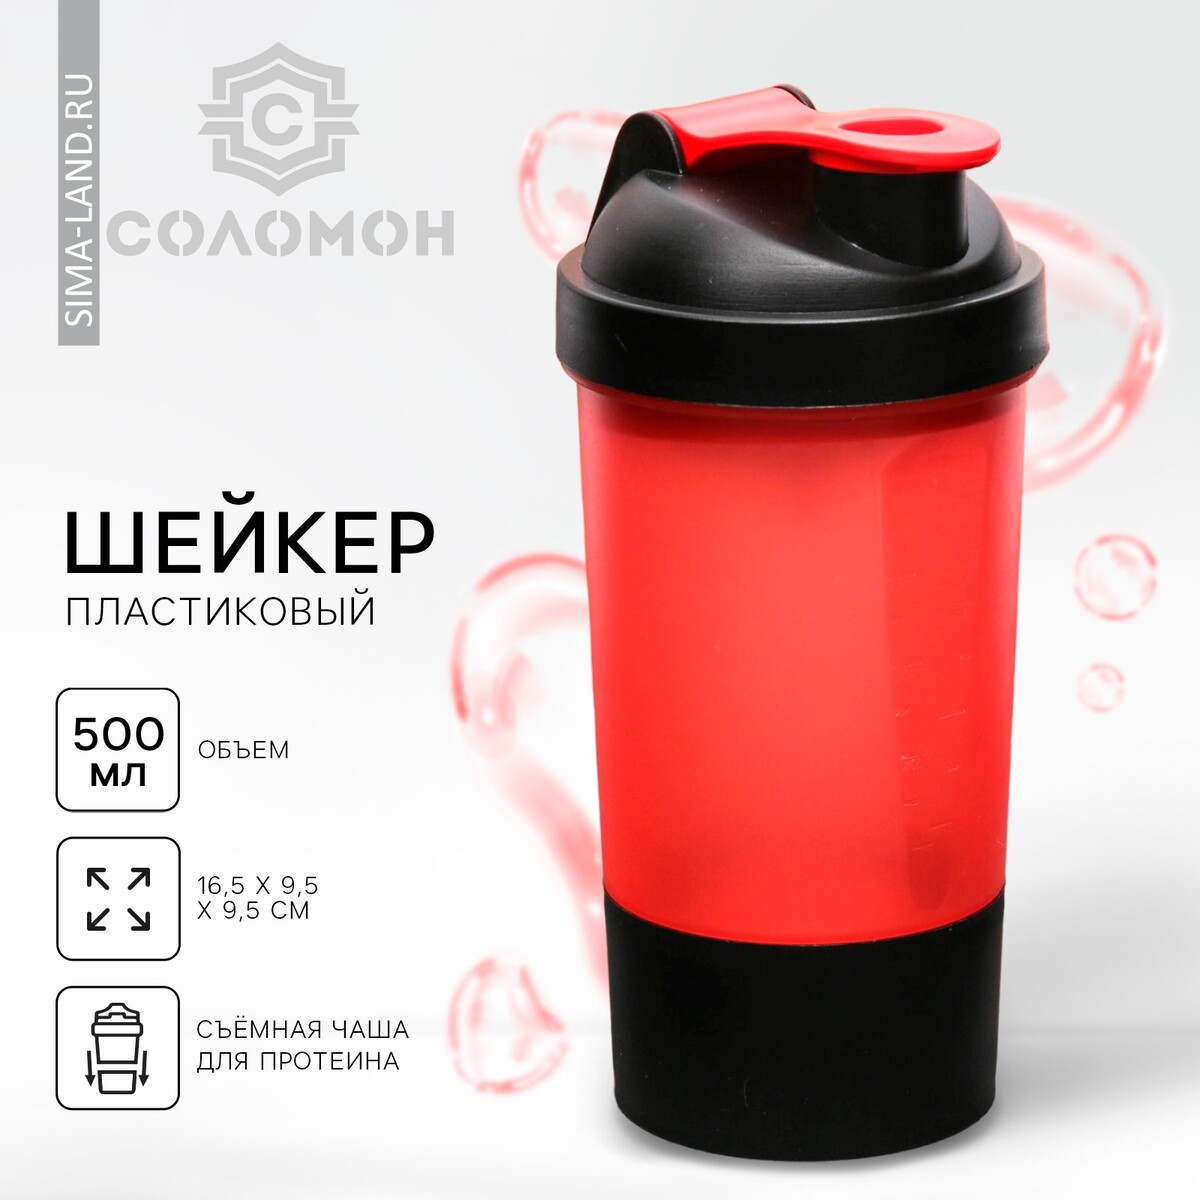 Шейкер спортивный с чашей под протеин, красно-черный, 500 мл шейкер спортивный с чашей под протеин бело оранжевый 500 мл